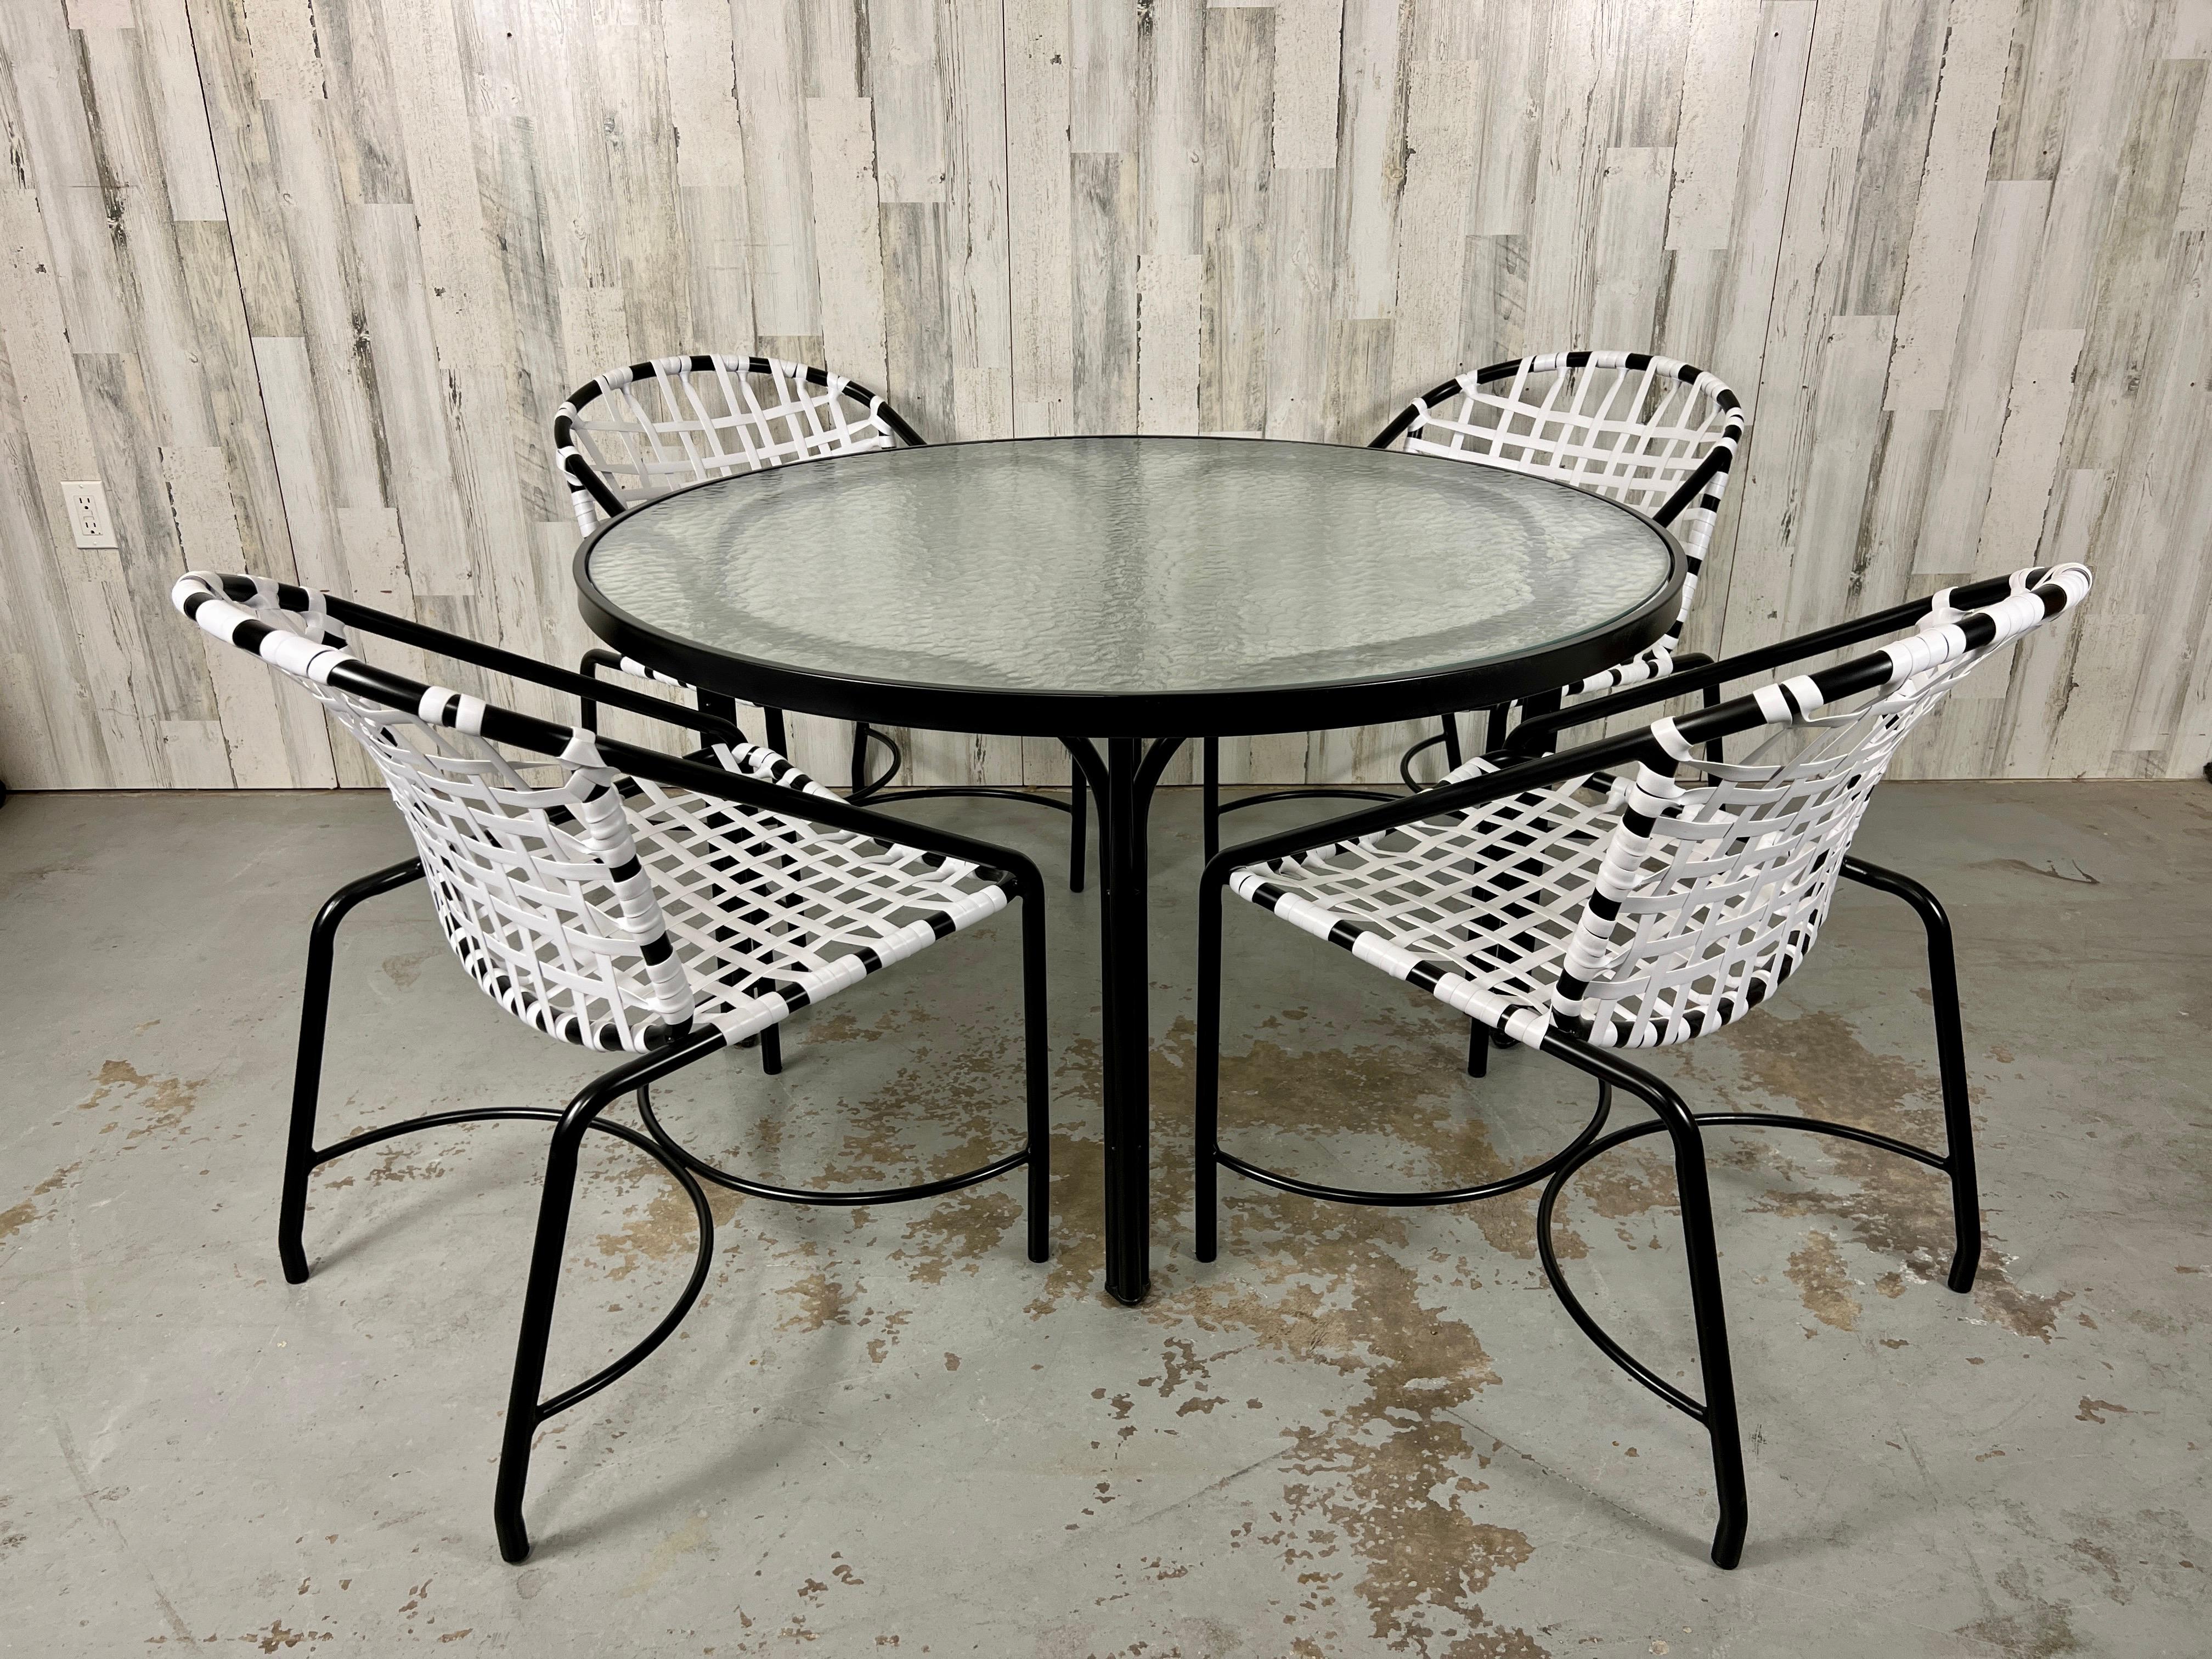 Vintage By vier Esstischstühle von Tadao Inouye für Brown Jordan Kantan mit rundem Esstisch Vollständig restauriert mit neuer schwarzer Pulverbeschichtung des Gestells und kontrastierenden weißen Gurten. Das Glas auf dem Tisch ist originales